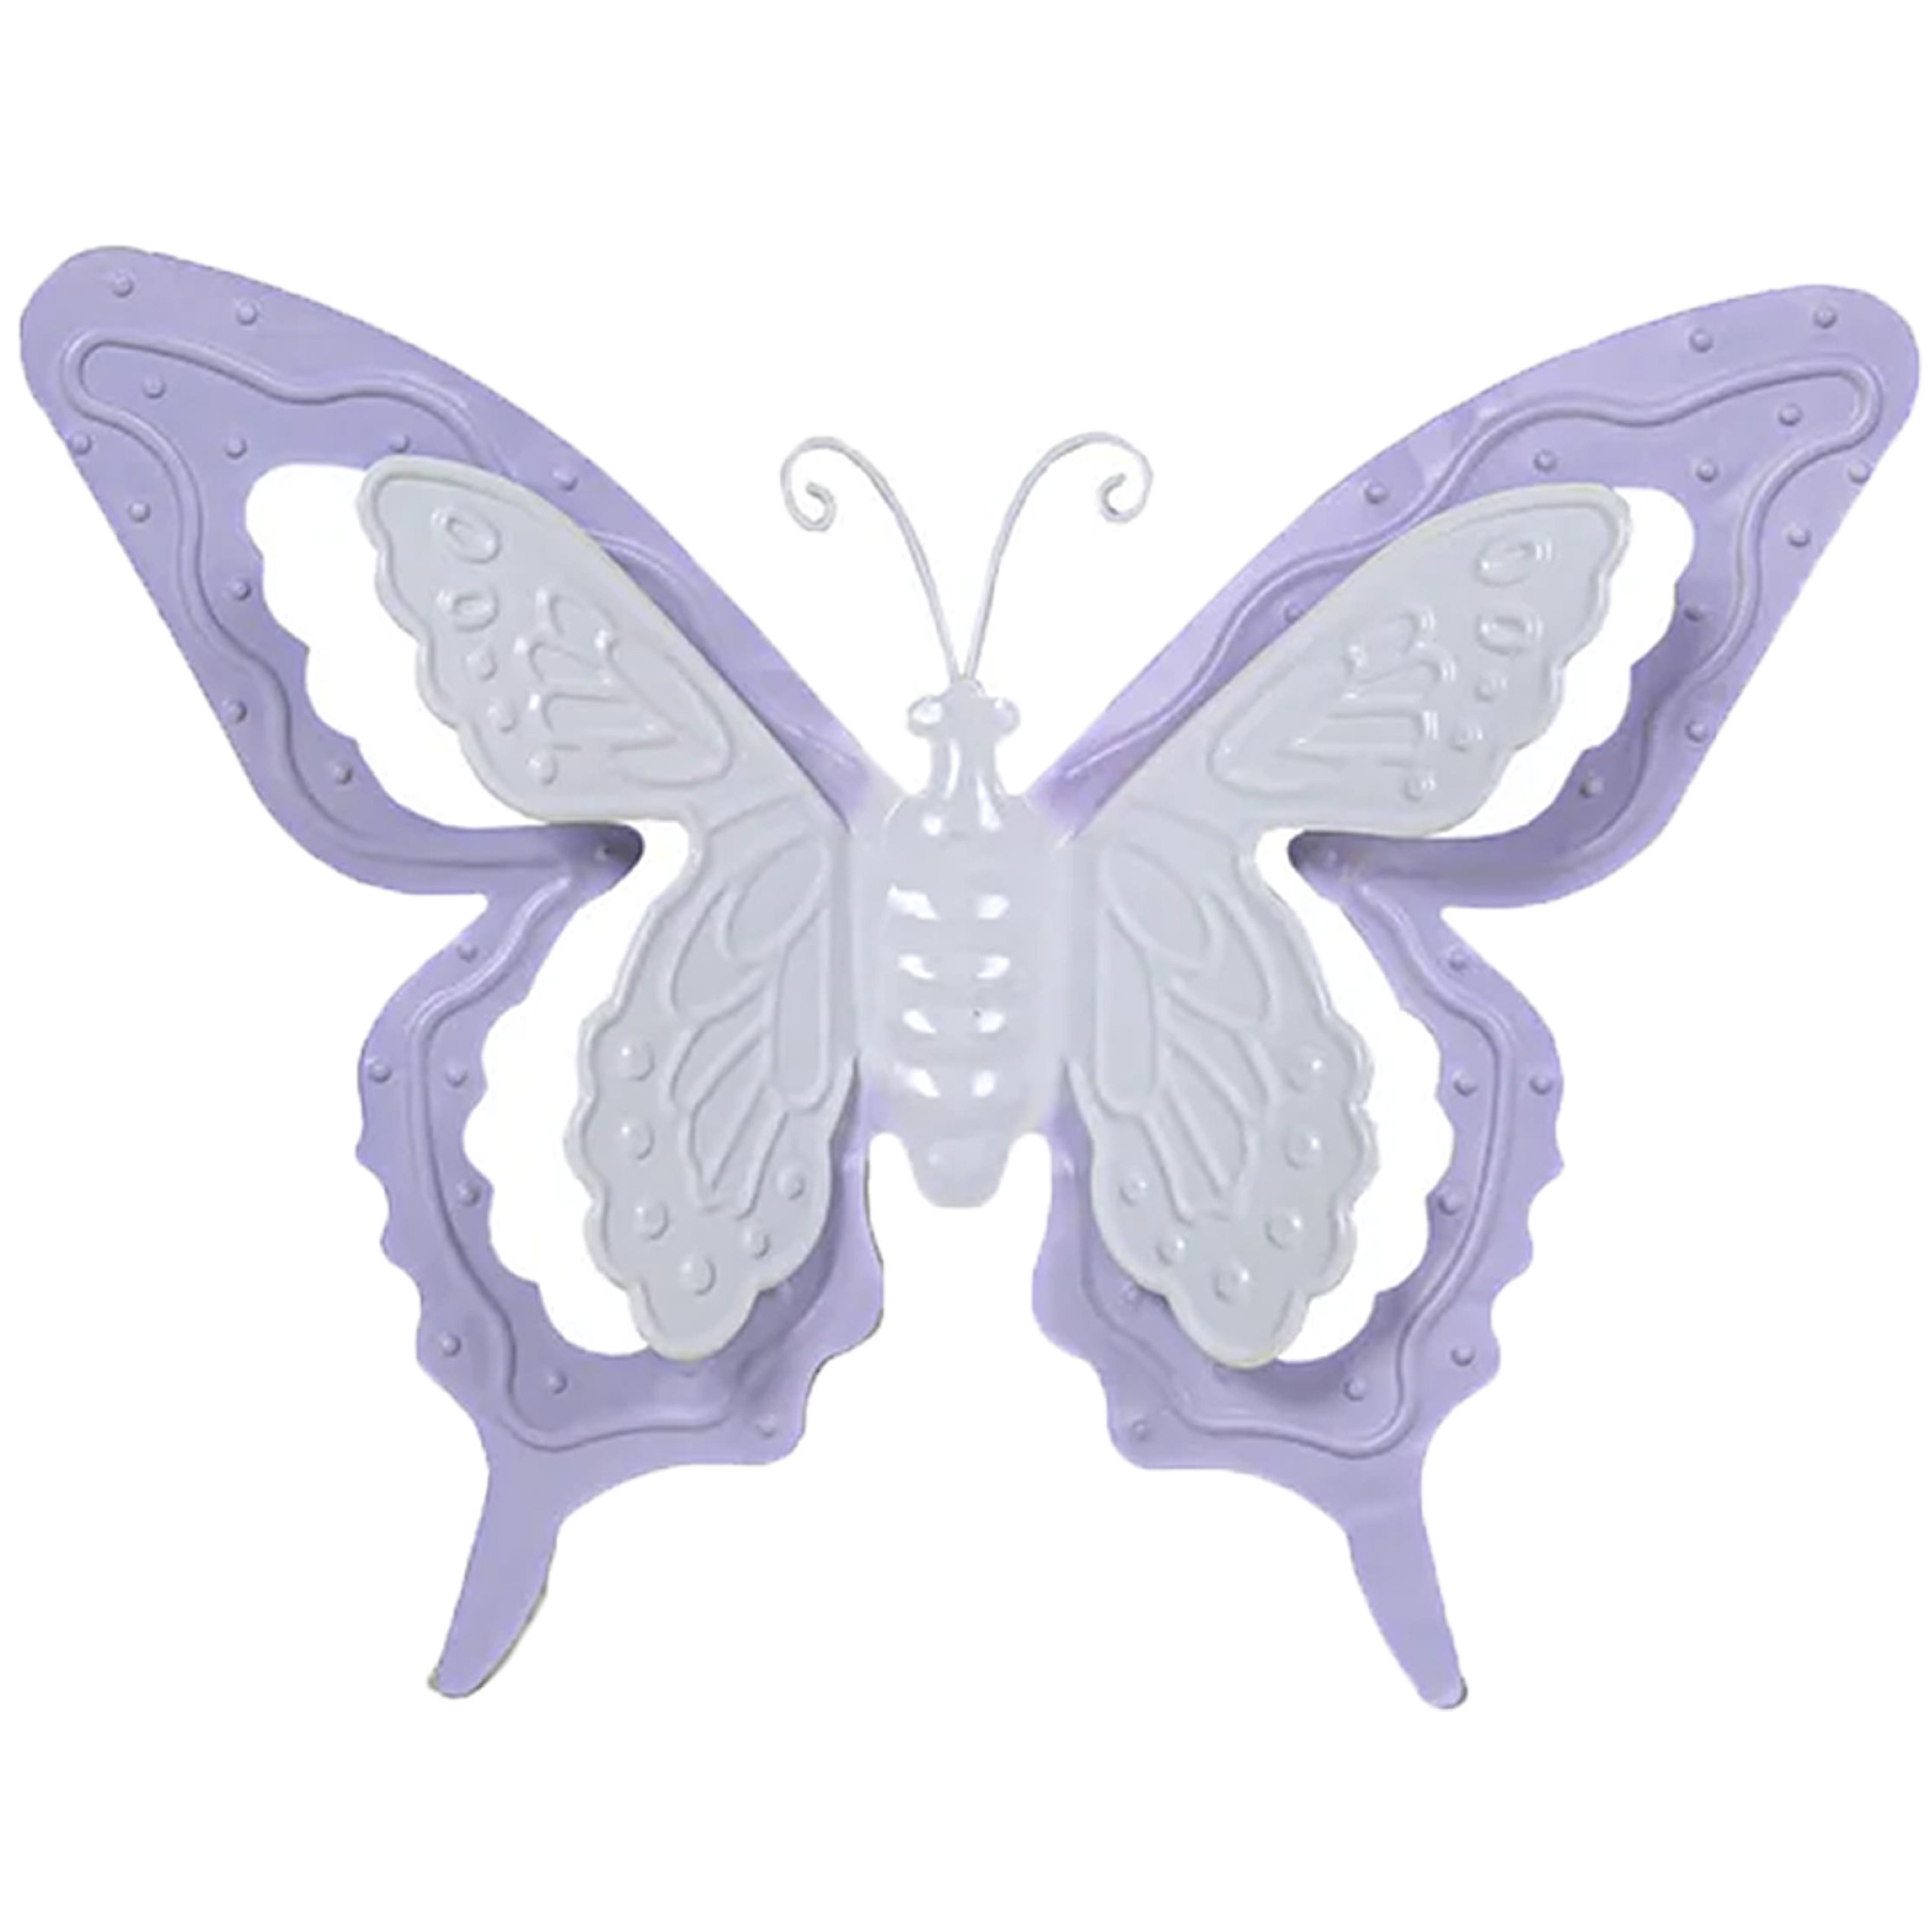 Tuin-schutting decoratie vlinder metaal lila paars 36 x 27 cm